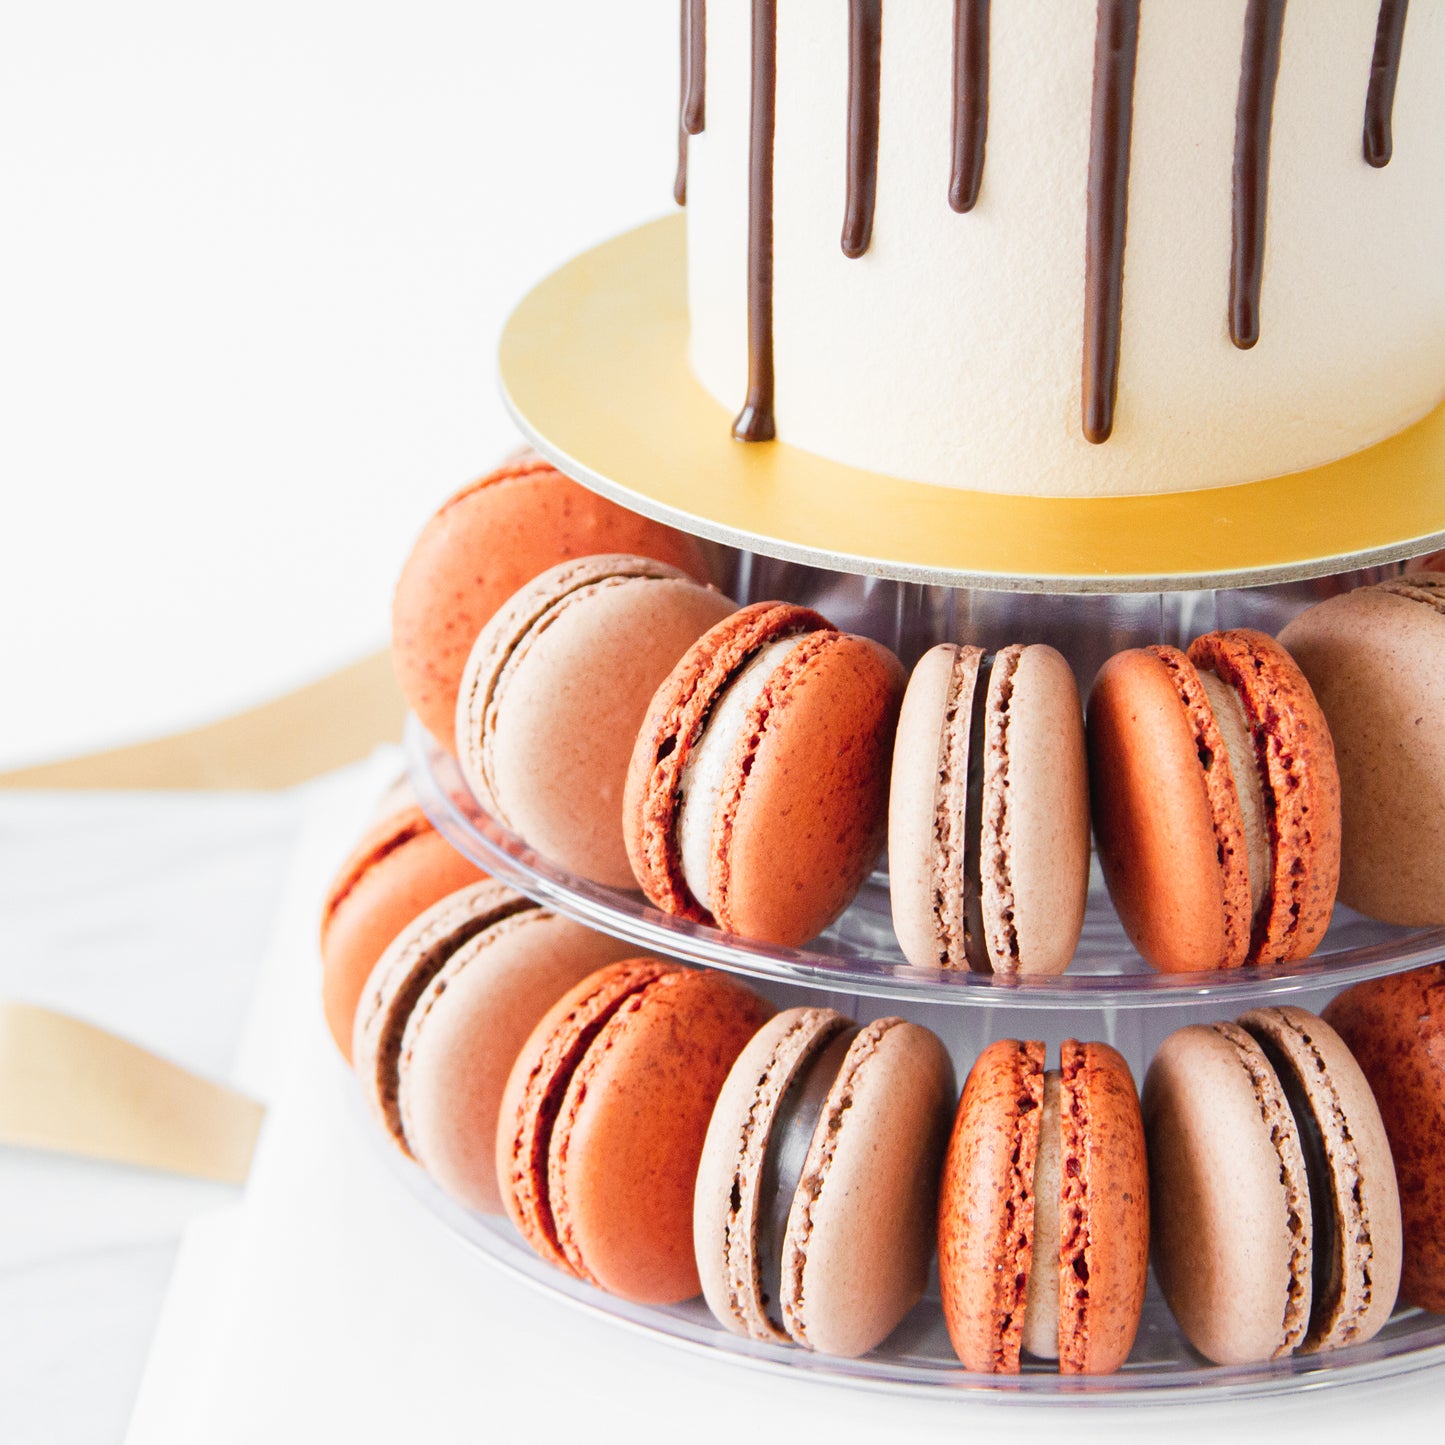 Macaron Cake Tower - Chocolate Truffle Cake with 40 pcs macarons - $128 Nett